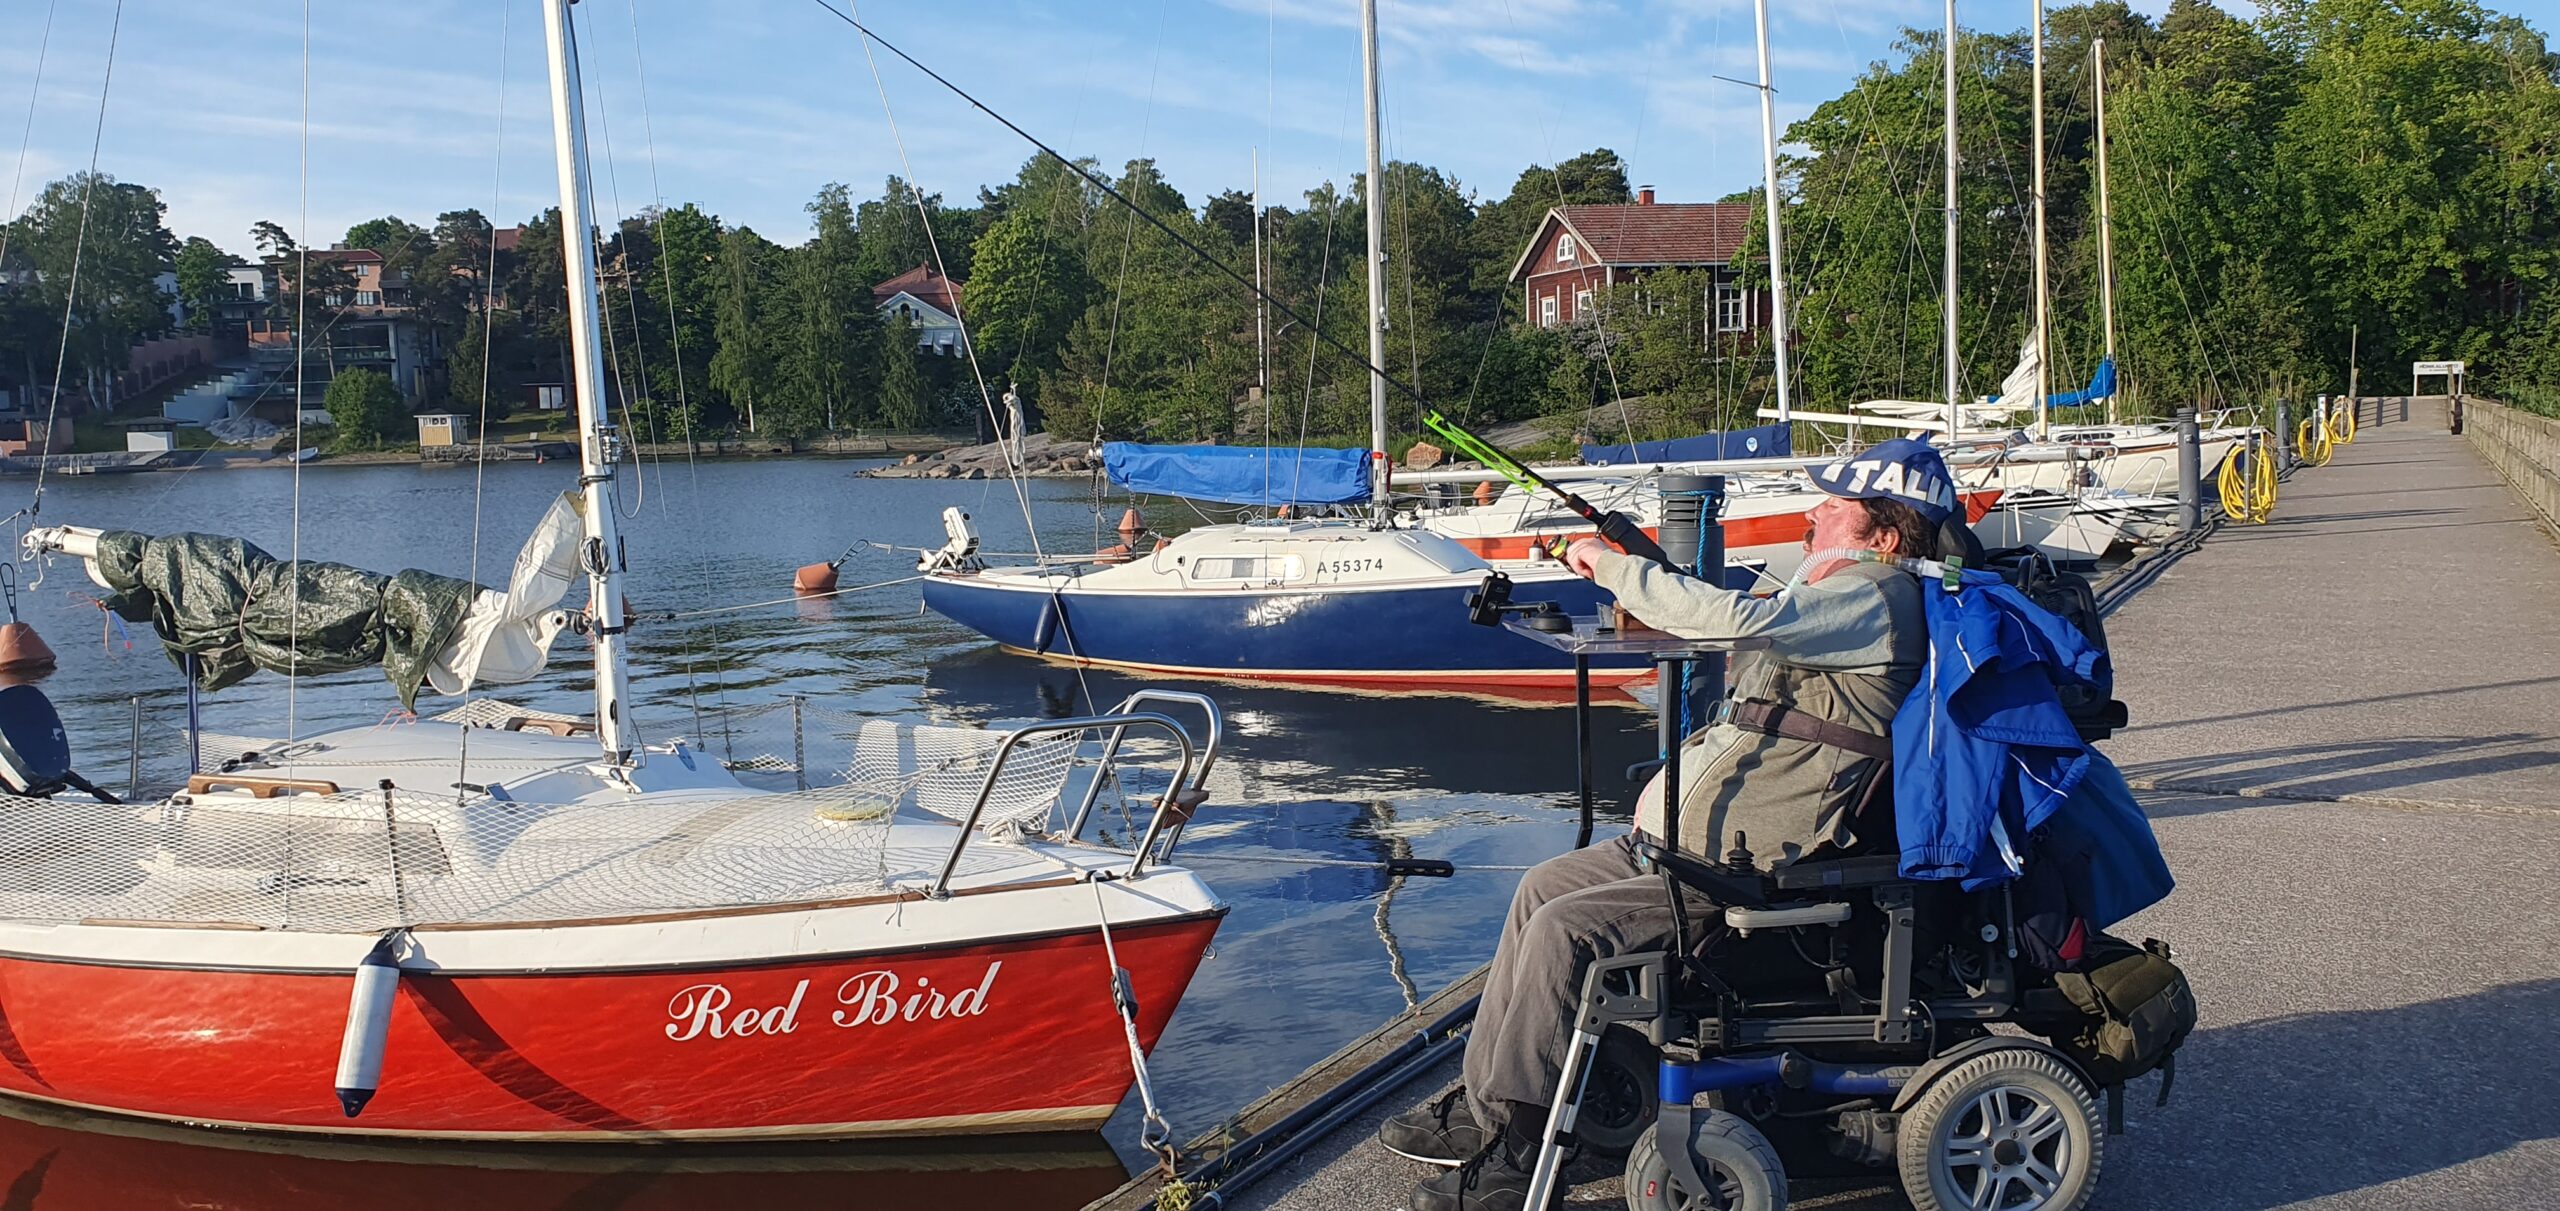 hengityshalvusstatuksen omaaja pyörätuolissa kalastamassa laiturilla virvelillä. Taustalla punainen purjevene ja muita purjeveneitä